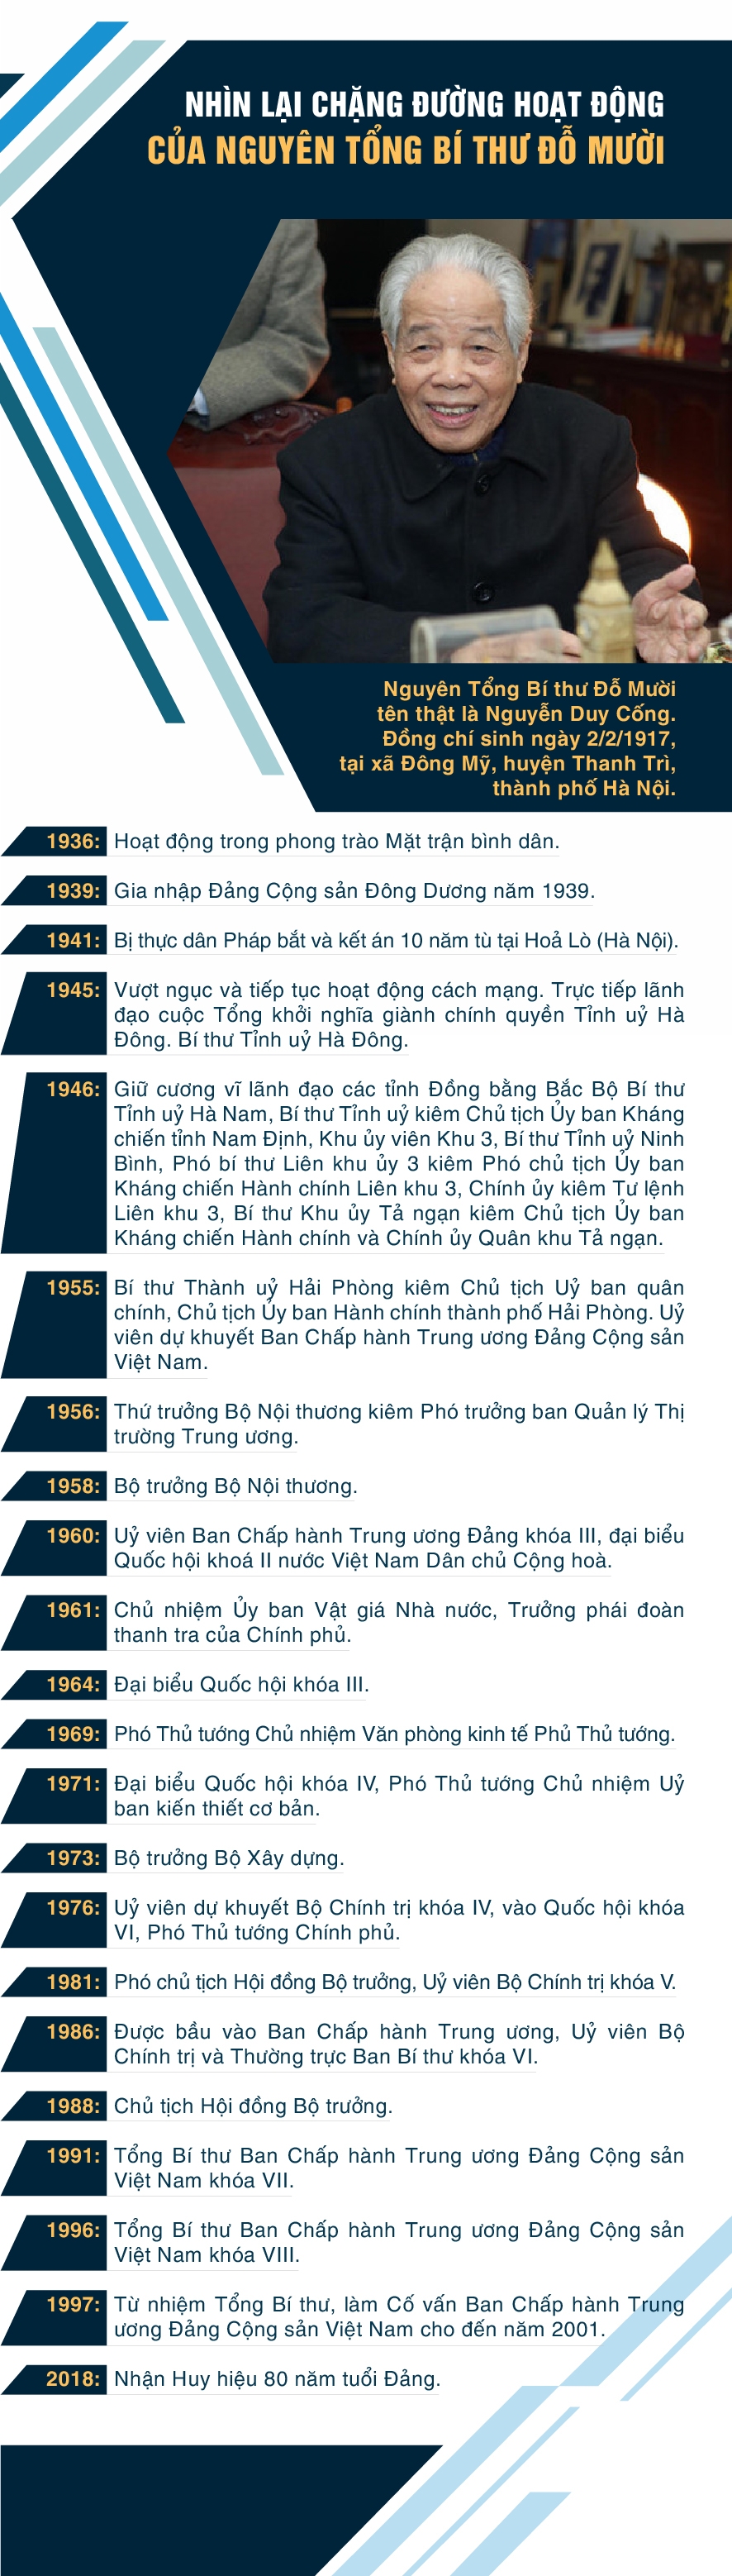 infographic nhin lai chang duong hoat dong cua nguyen tong bi thu do muoi